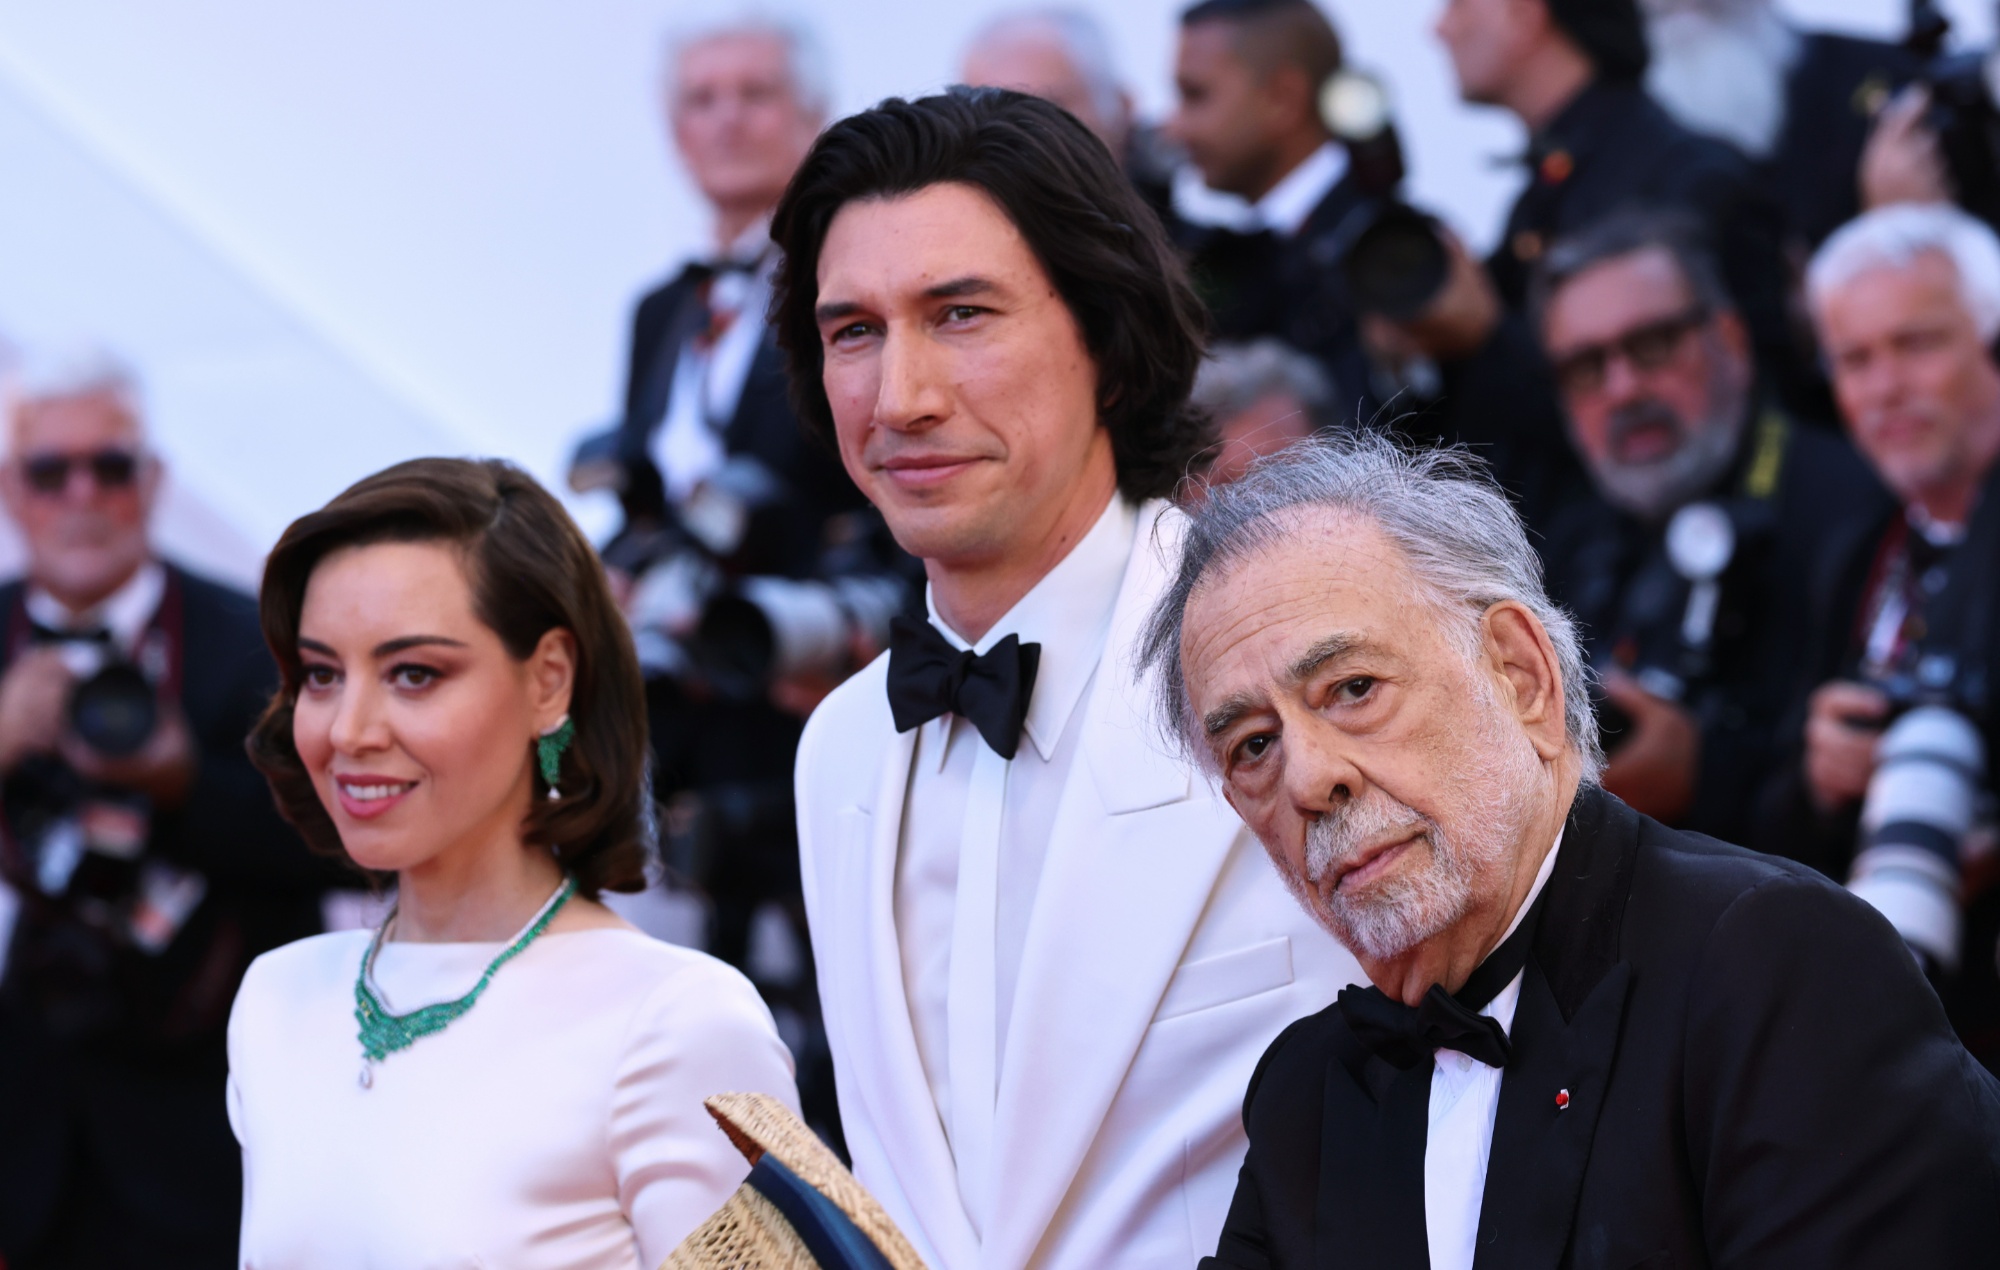 Megalópolis", de Francis Ford Coppola, recibe el aplauso del público de Cannes en una esperada superproducción que suscita reacciones encontradas